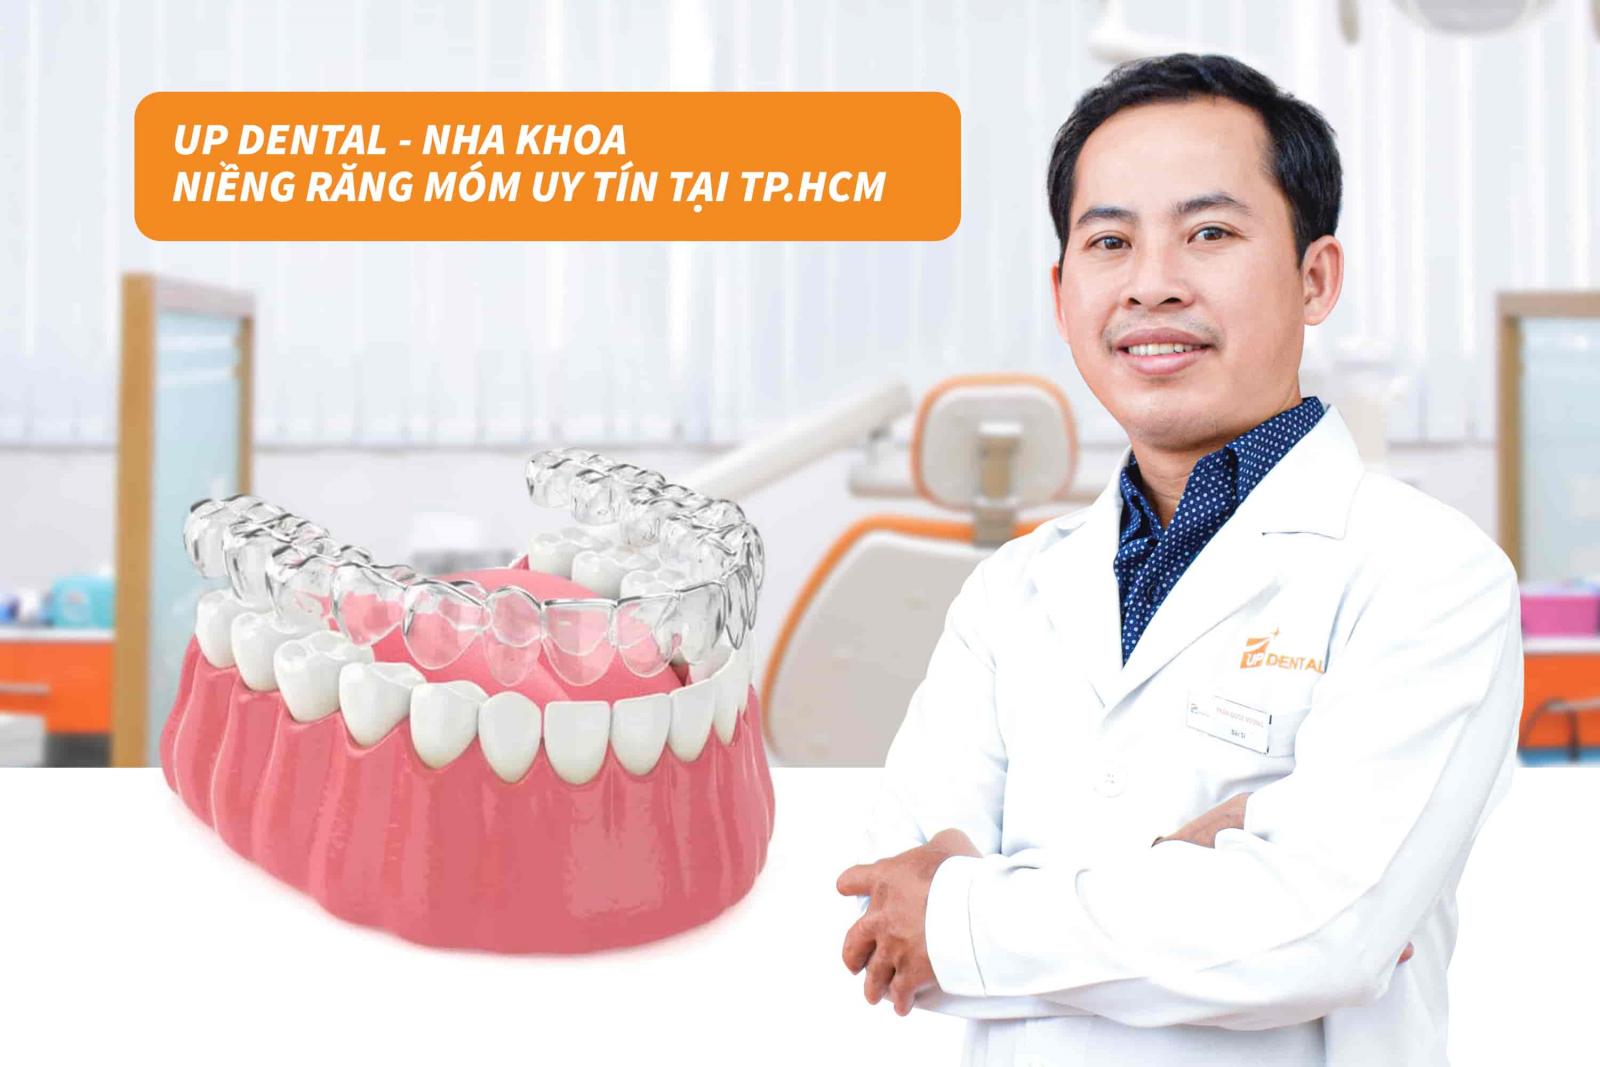 Up Dental - Nha khoa niềng răng móm uy tín tại TP.HCM 